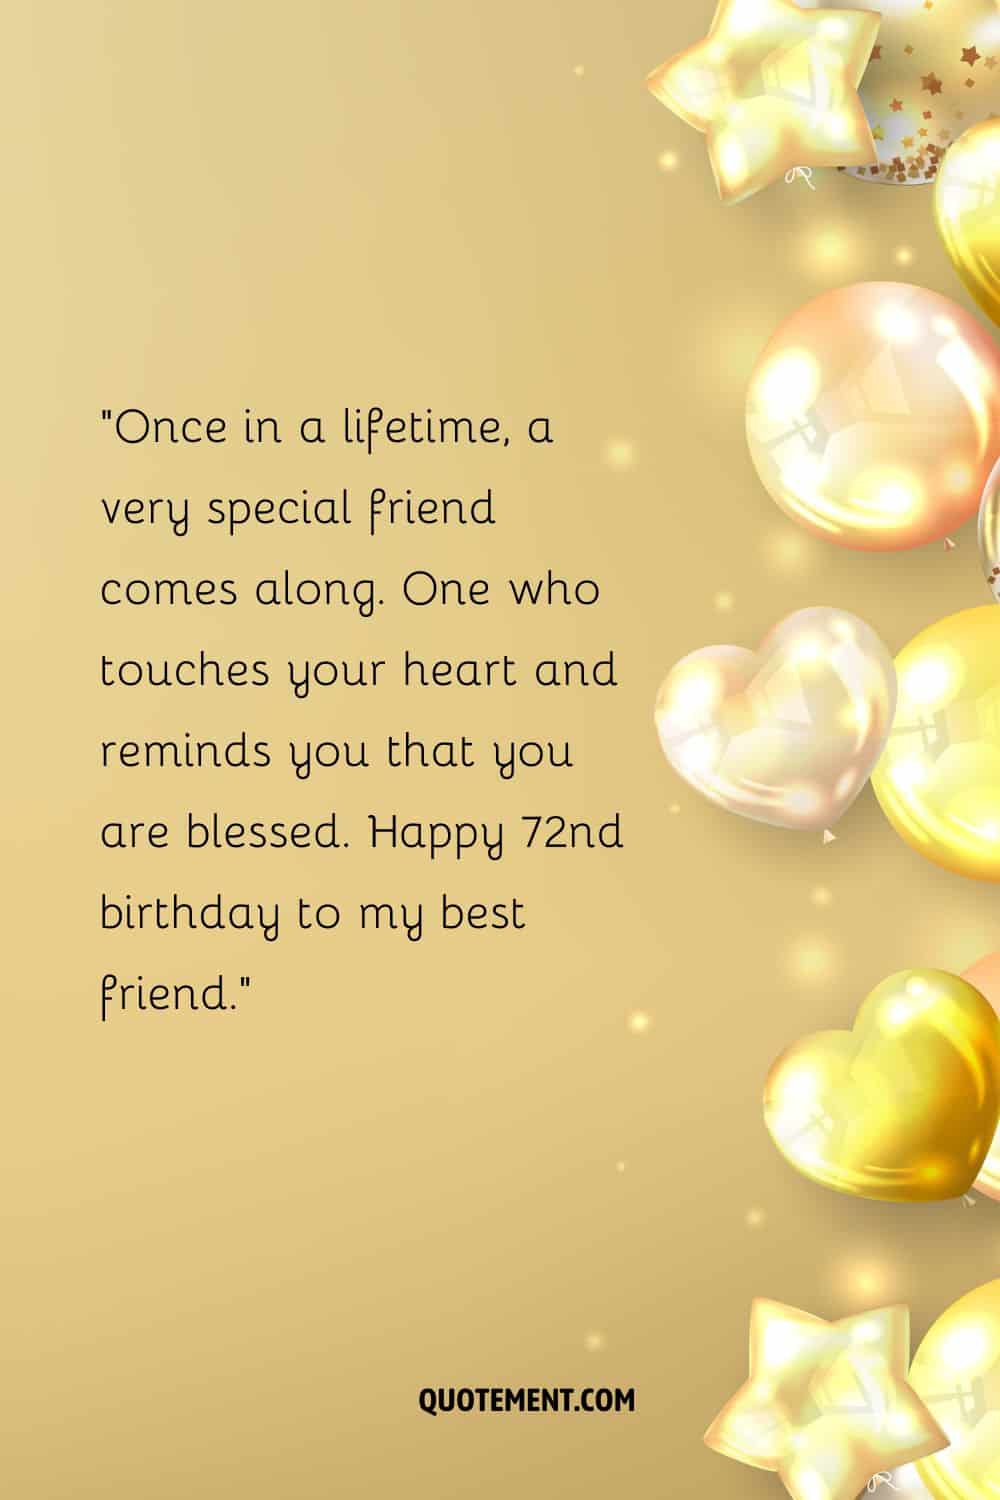 globos brillantes que representan un deseo de 72 cumpleaños para un amigo